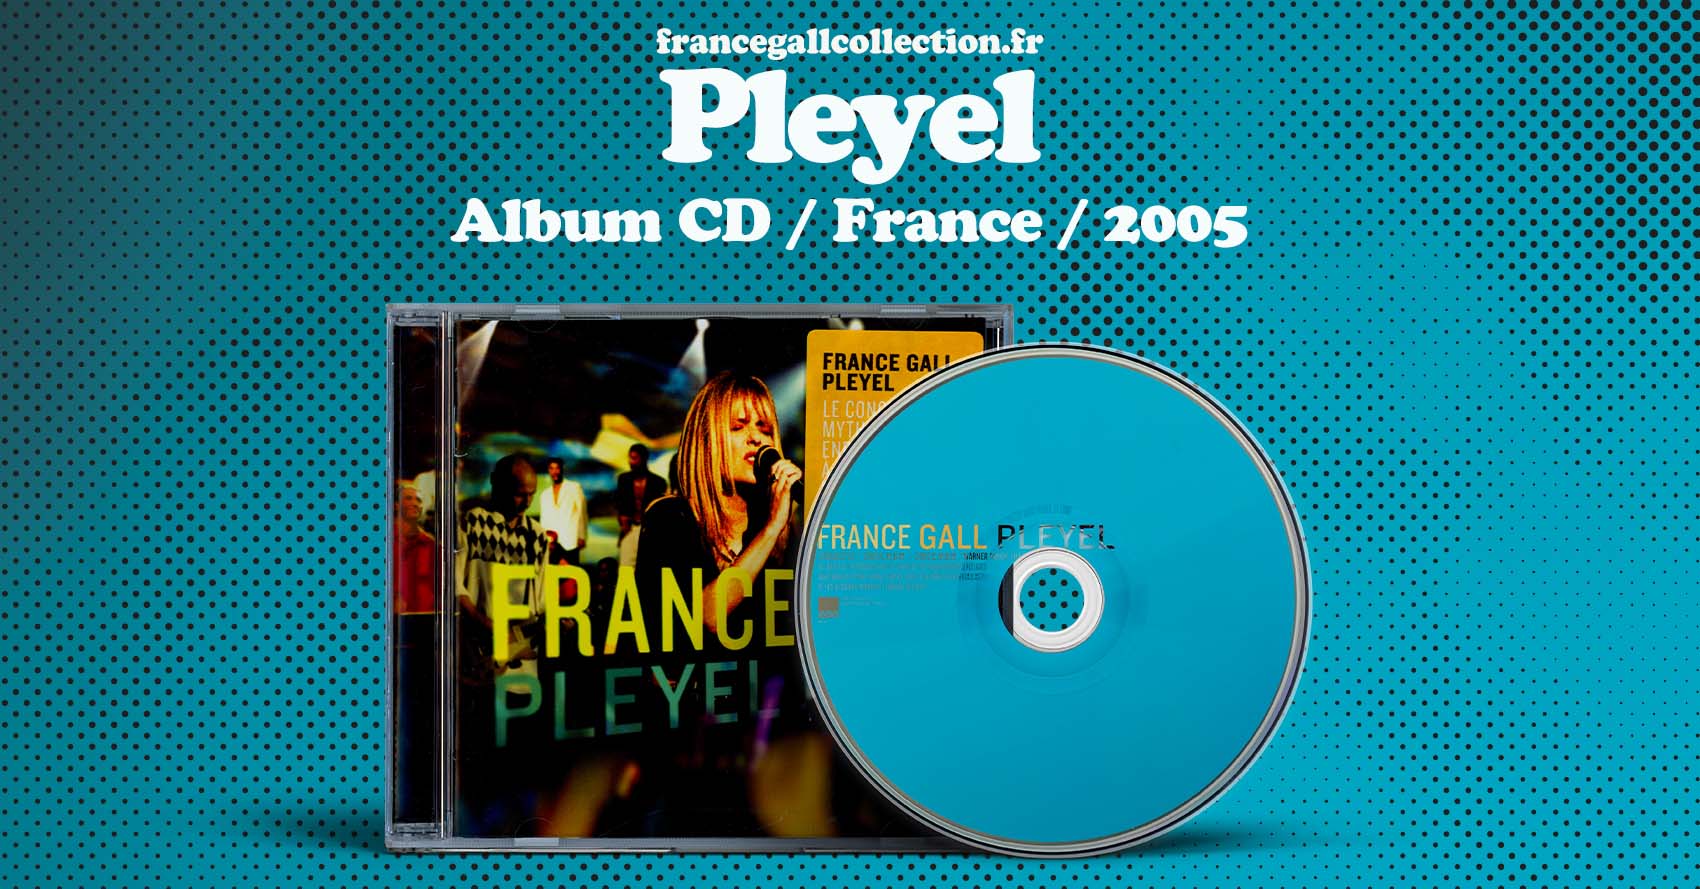 Ce live édité en 2005 contient 14 titres enregistrés pendant les représentations de France Gall du 27 septembre au 1er octobre 1994 à la Salle Pleyel. La première édition du 26 octobre 2004 est incluse dans l'anthologie Évidemment, intégrale en 13 CD et 1 DVD des années Warner.